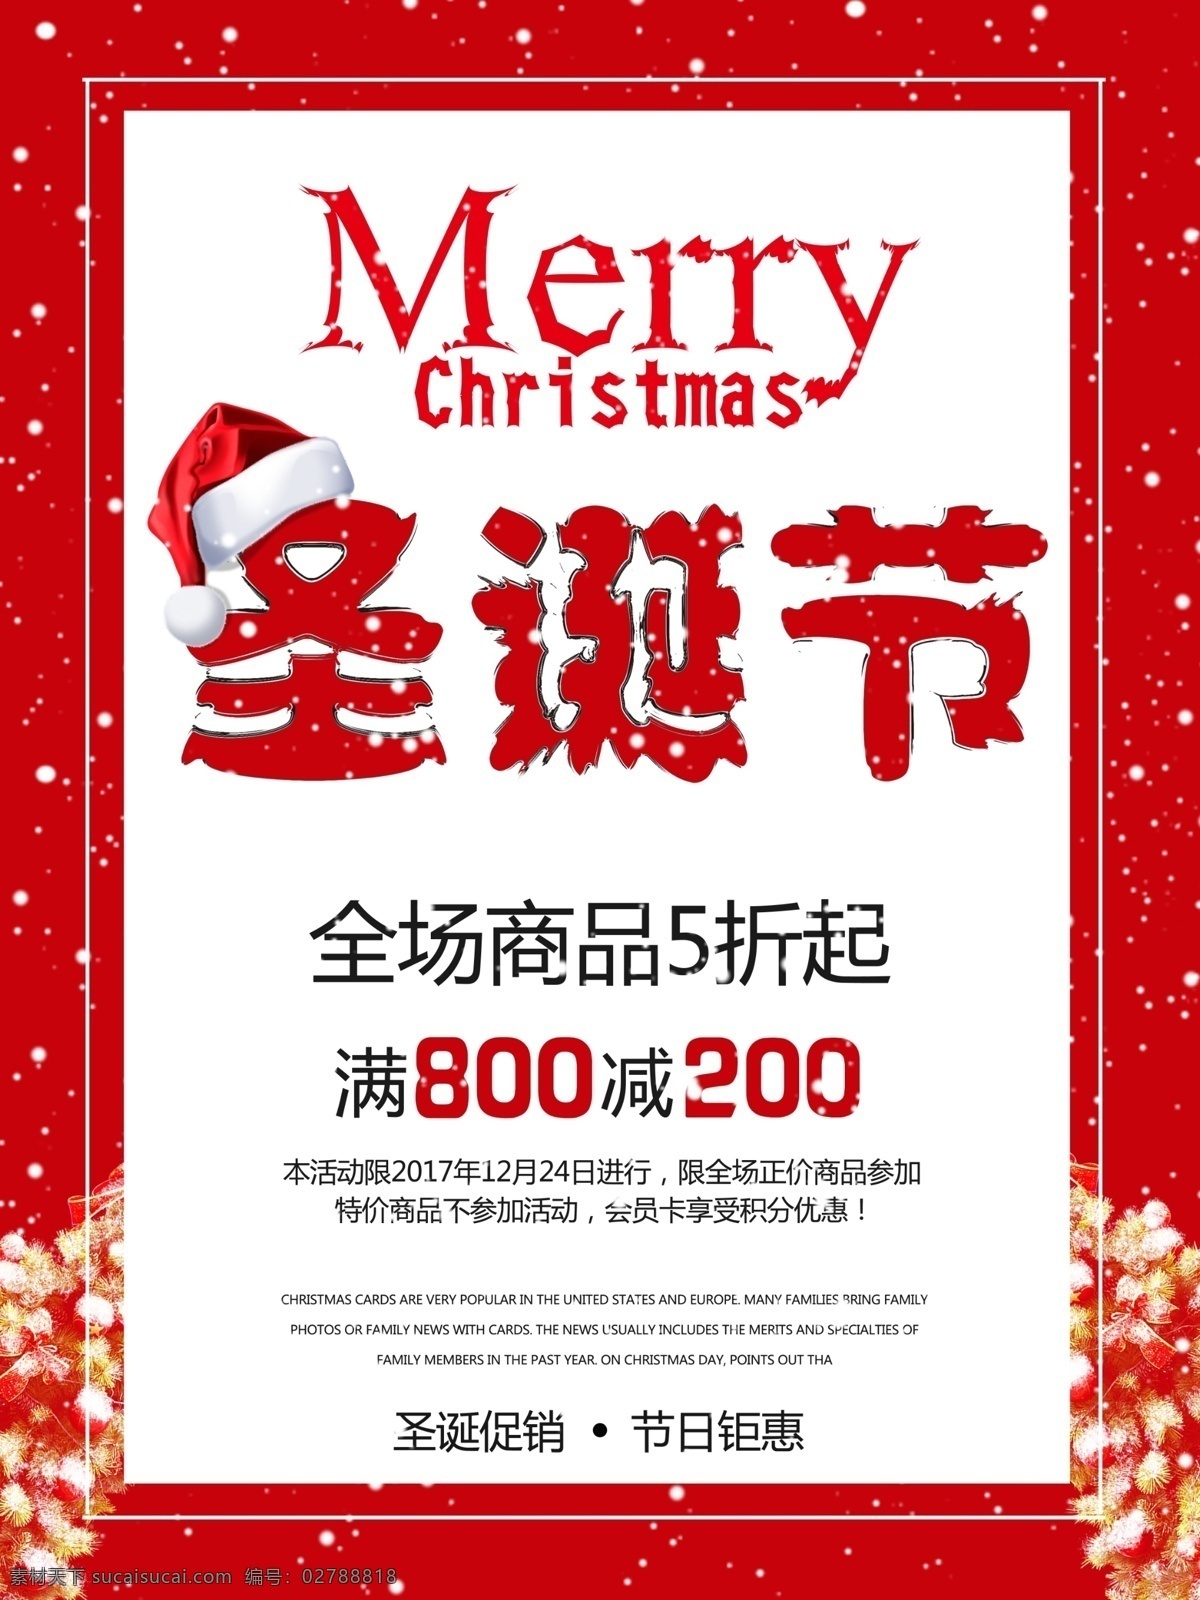 创意 圣诞节 促销 海报 圣诞帽 字体设计 雪花 圣诞树 节日钜惠